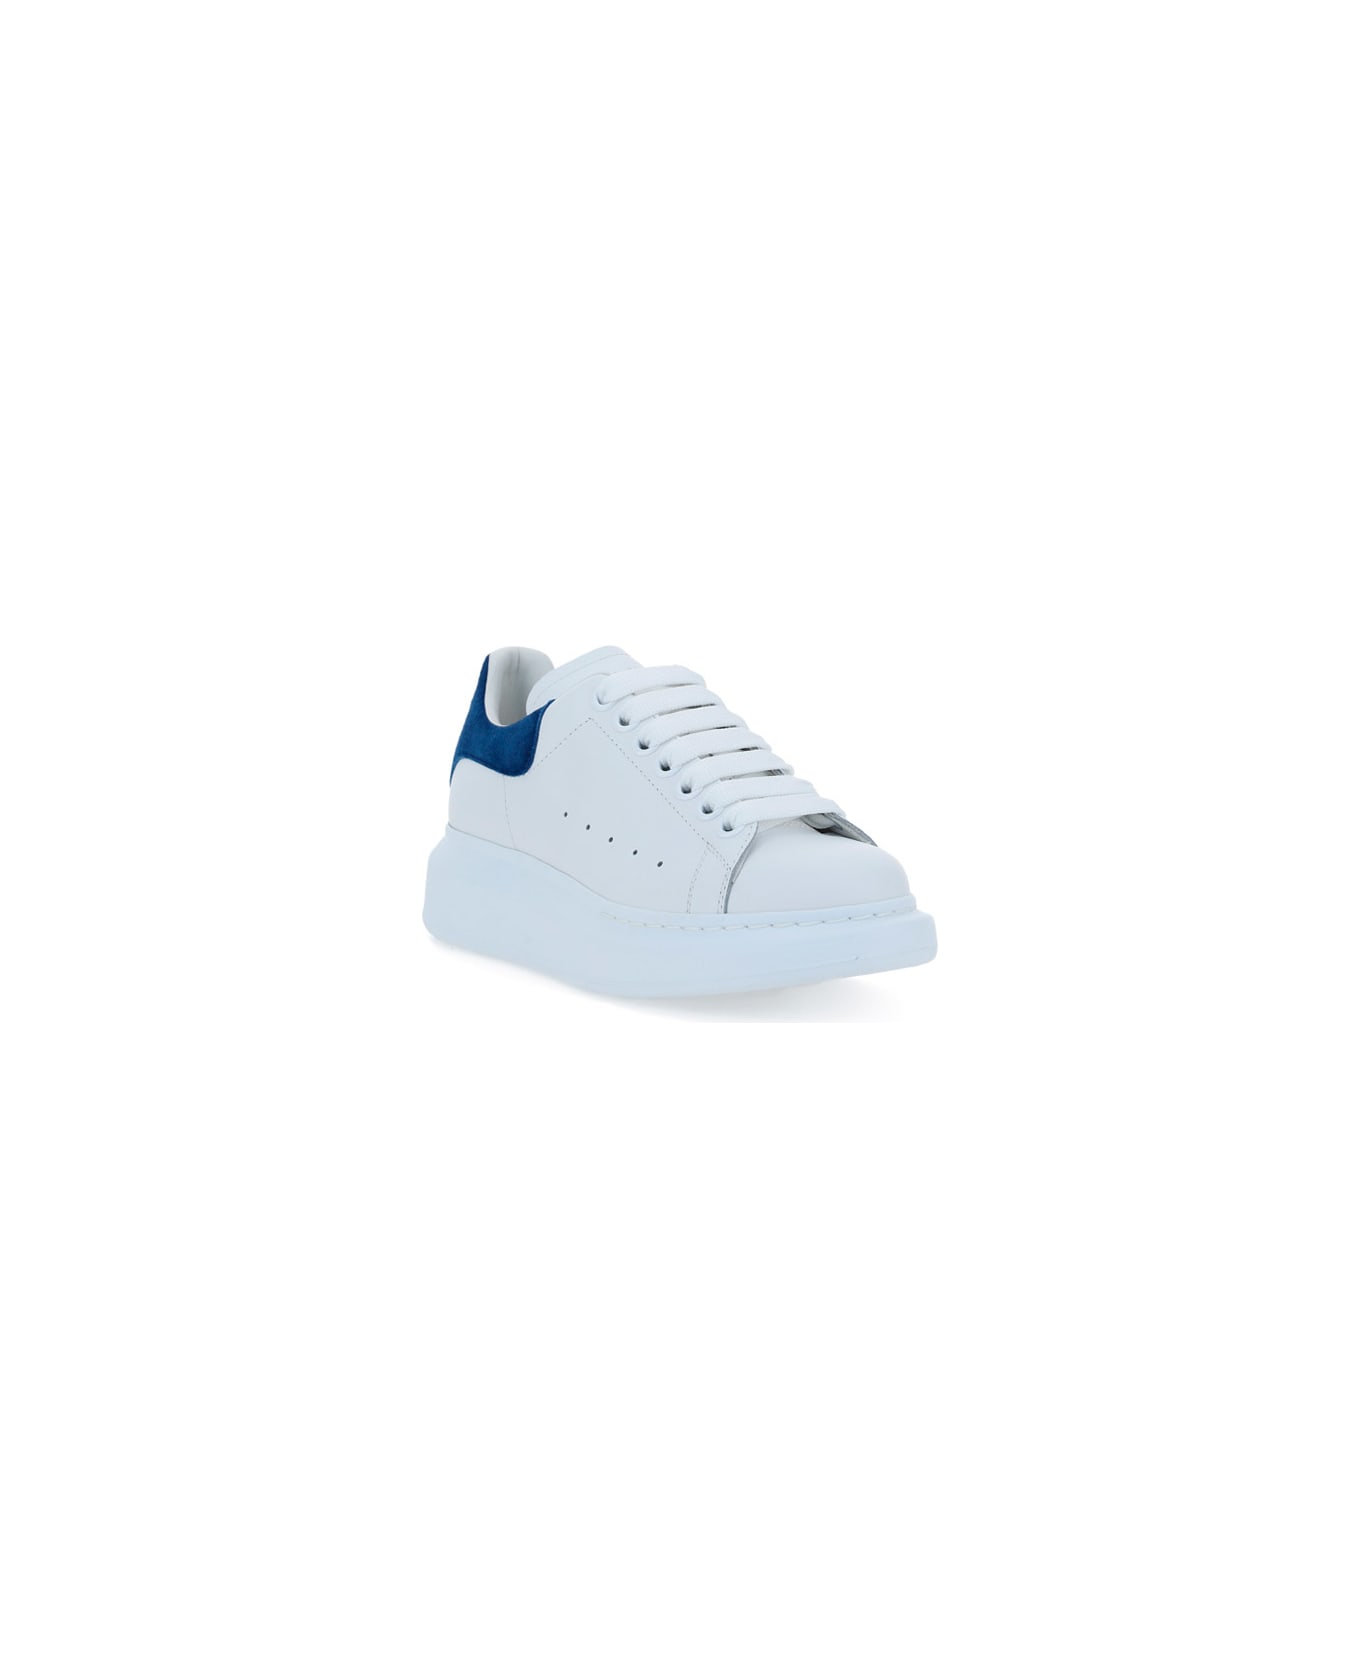 Alexander McQueen Sneakers - Blu